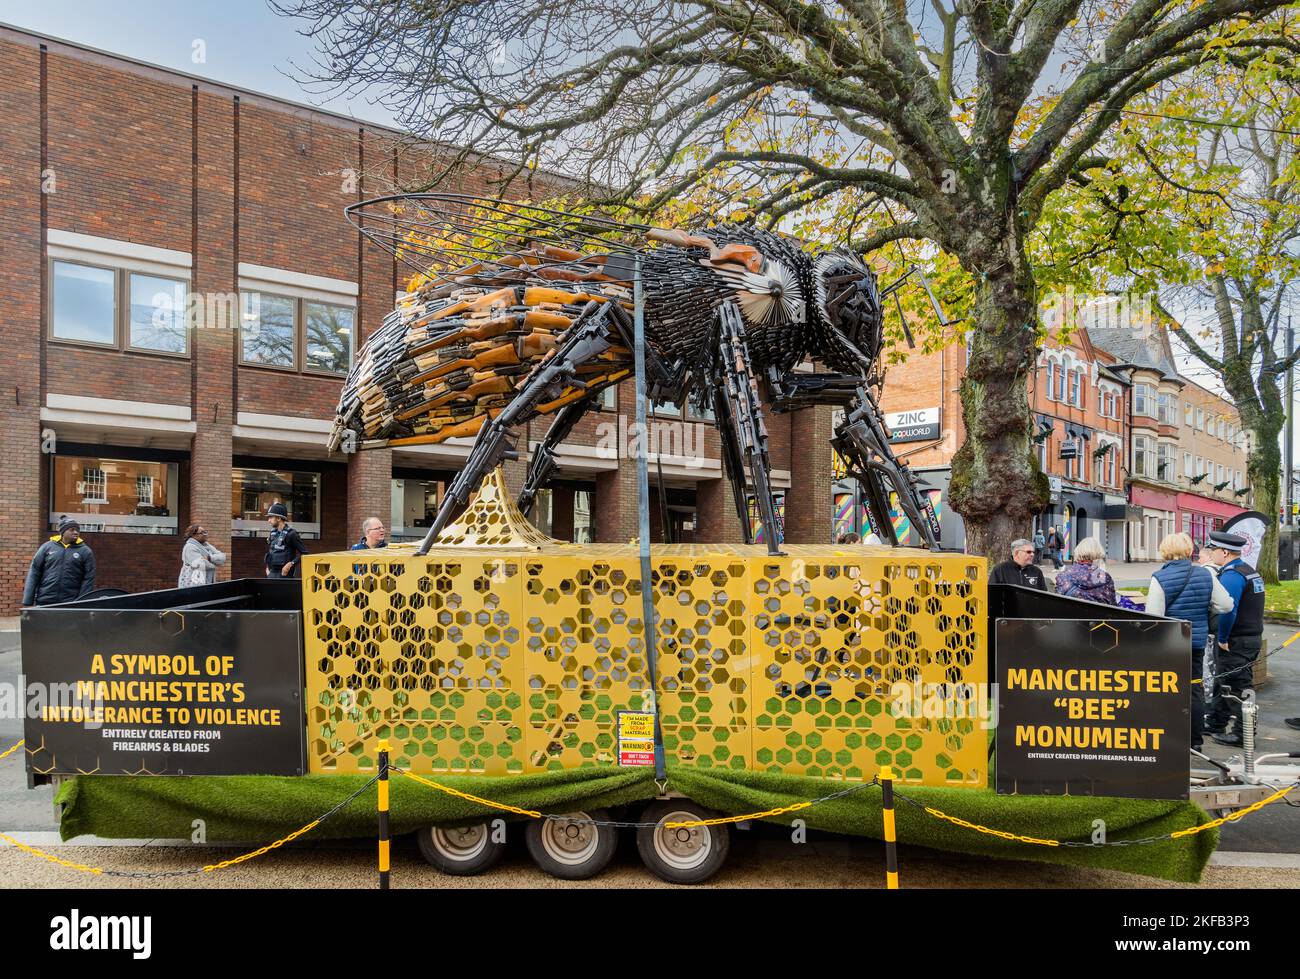 Eine riesige Biene, die aus Messern und Gewehren hergestellt wurde, die beschlagnahmt oder der Polizei im Raum Manchester übergeben wurden. Ausgestellt im Stadtzentrum von Redditch. Stockfoto